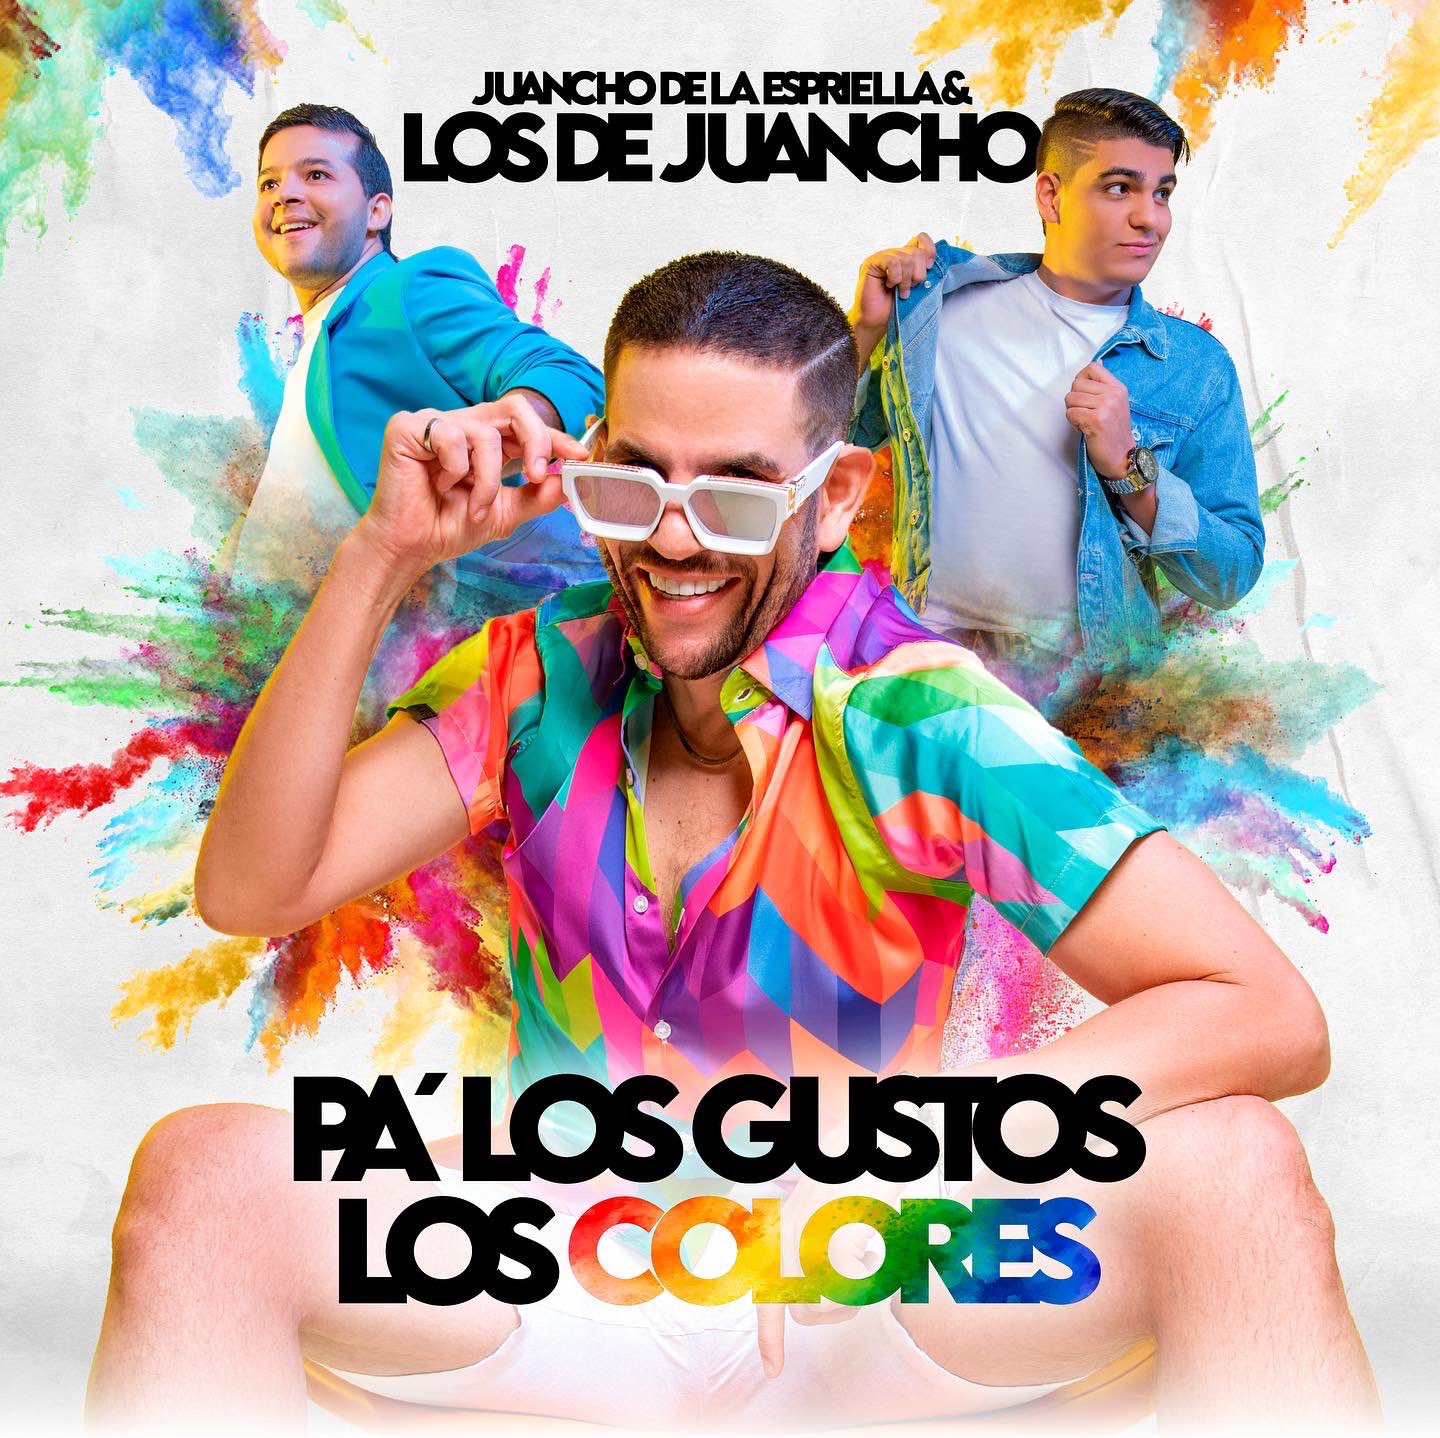 Escuchar Pa Los Gustos los Colores - Los De Juancho